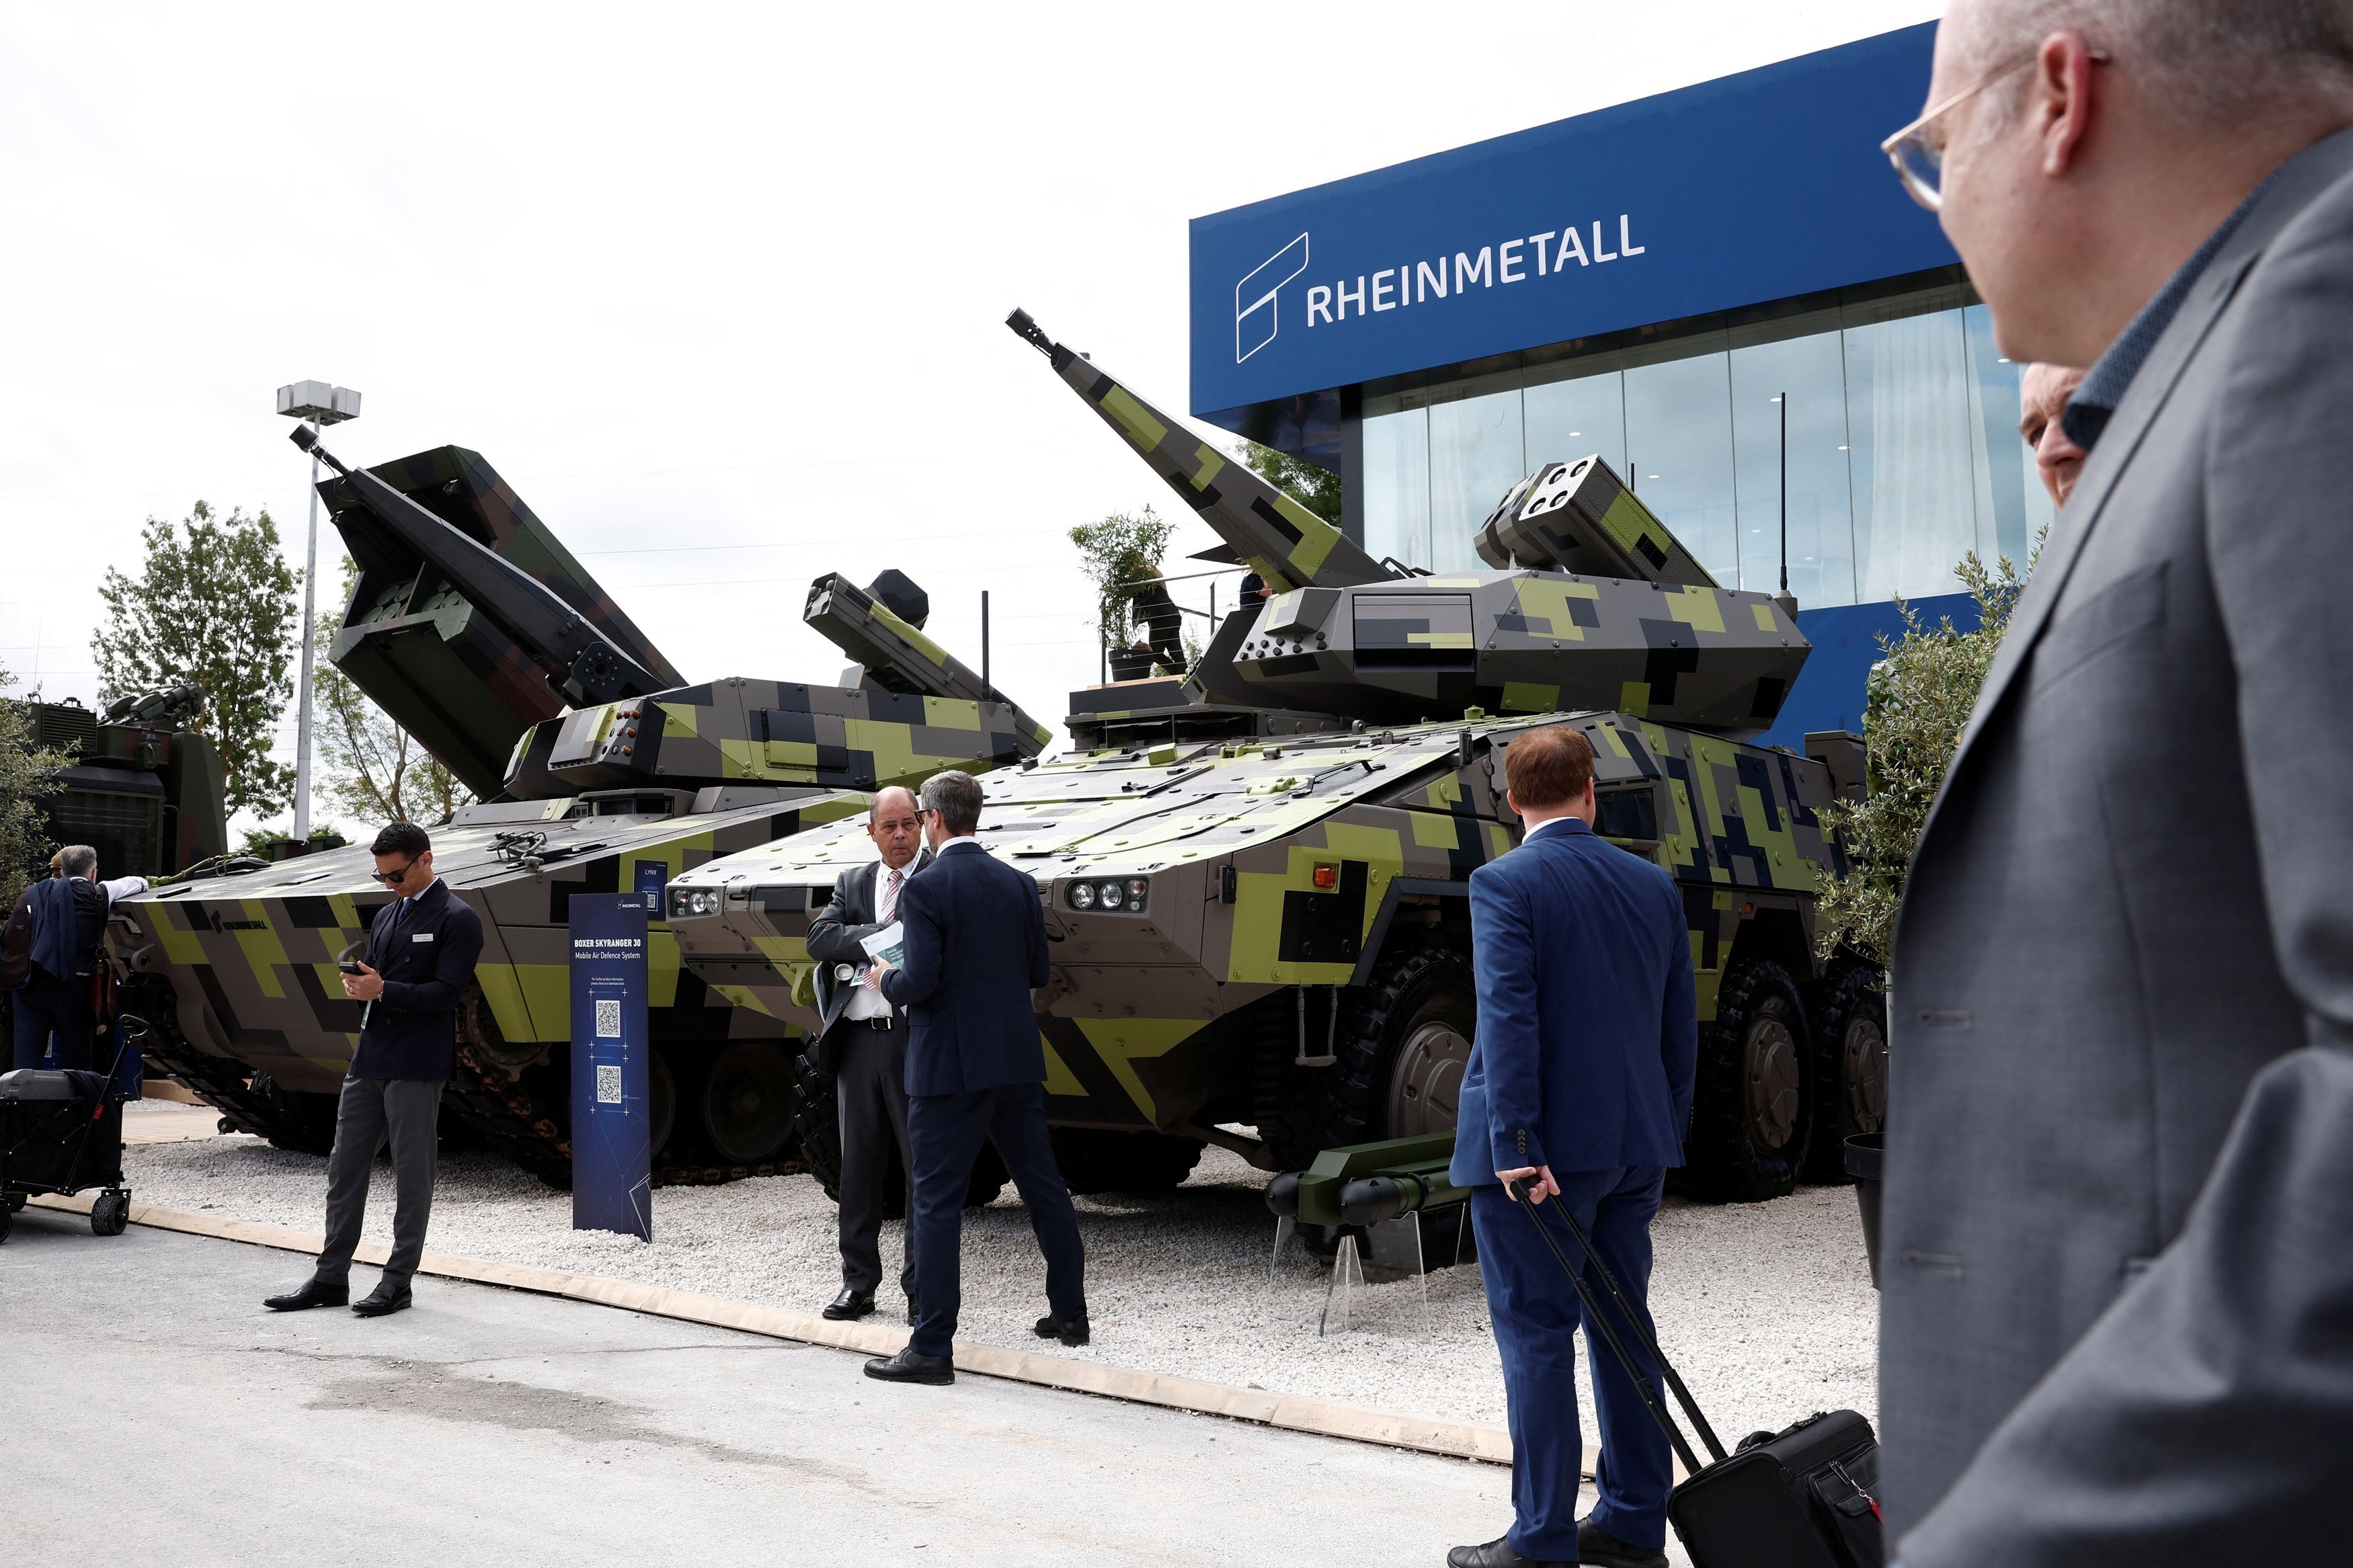 Mezzi blindati della Rheinmetall in esposizione in questi giorni all'Expo delle armi di Parigi